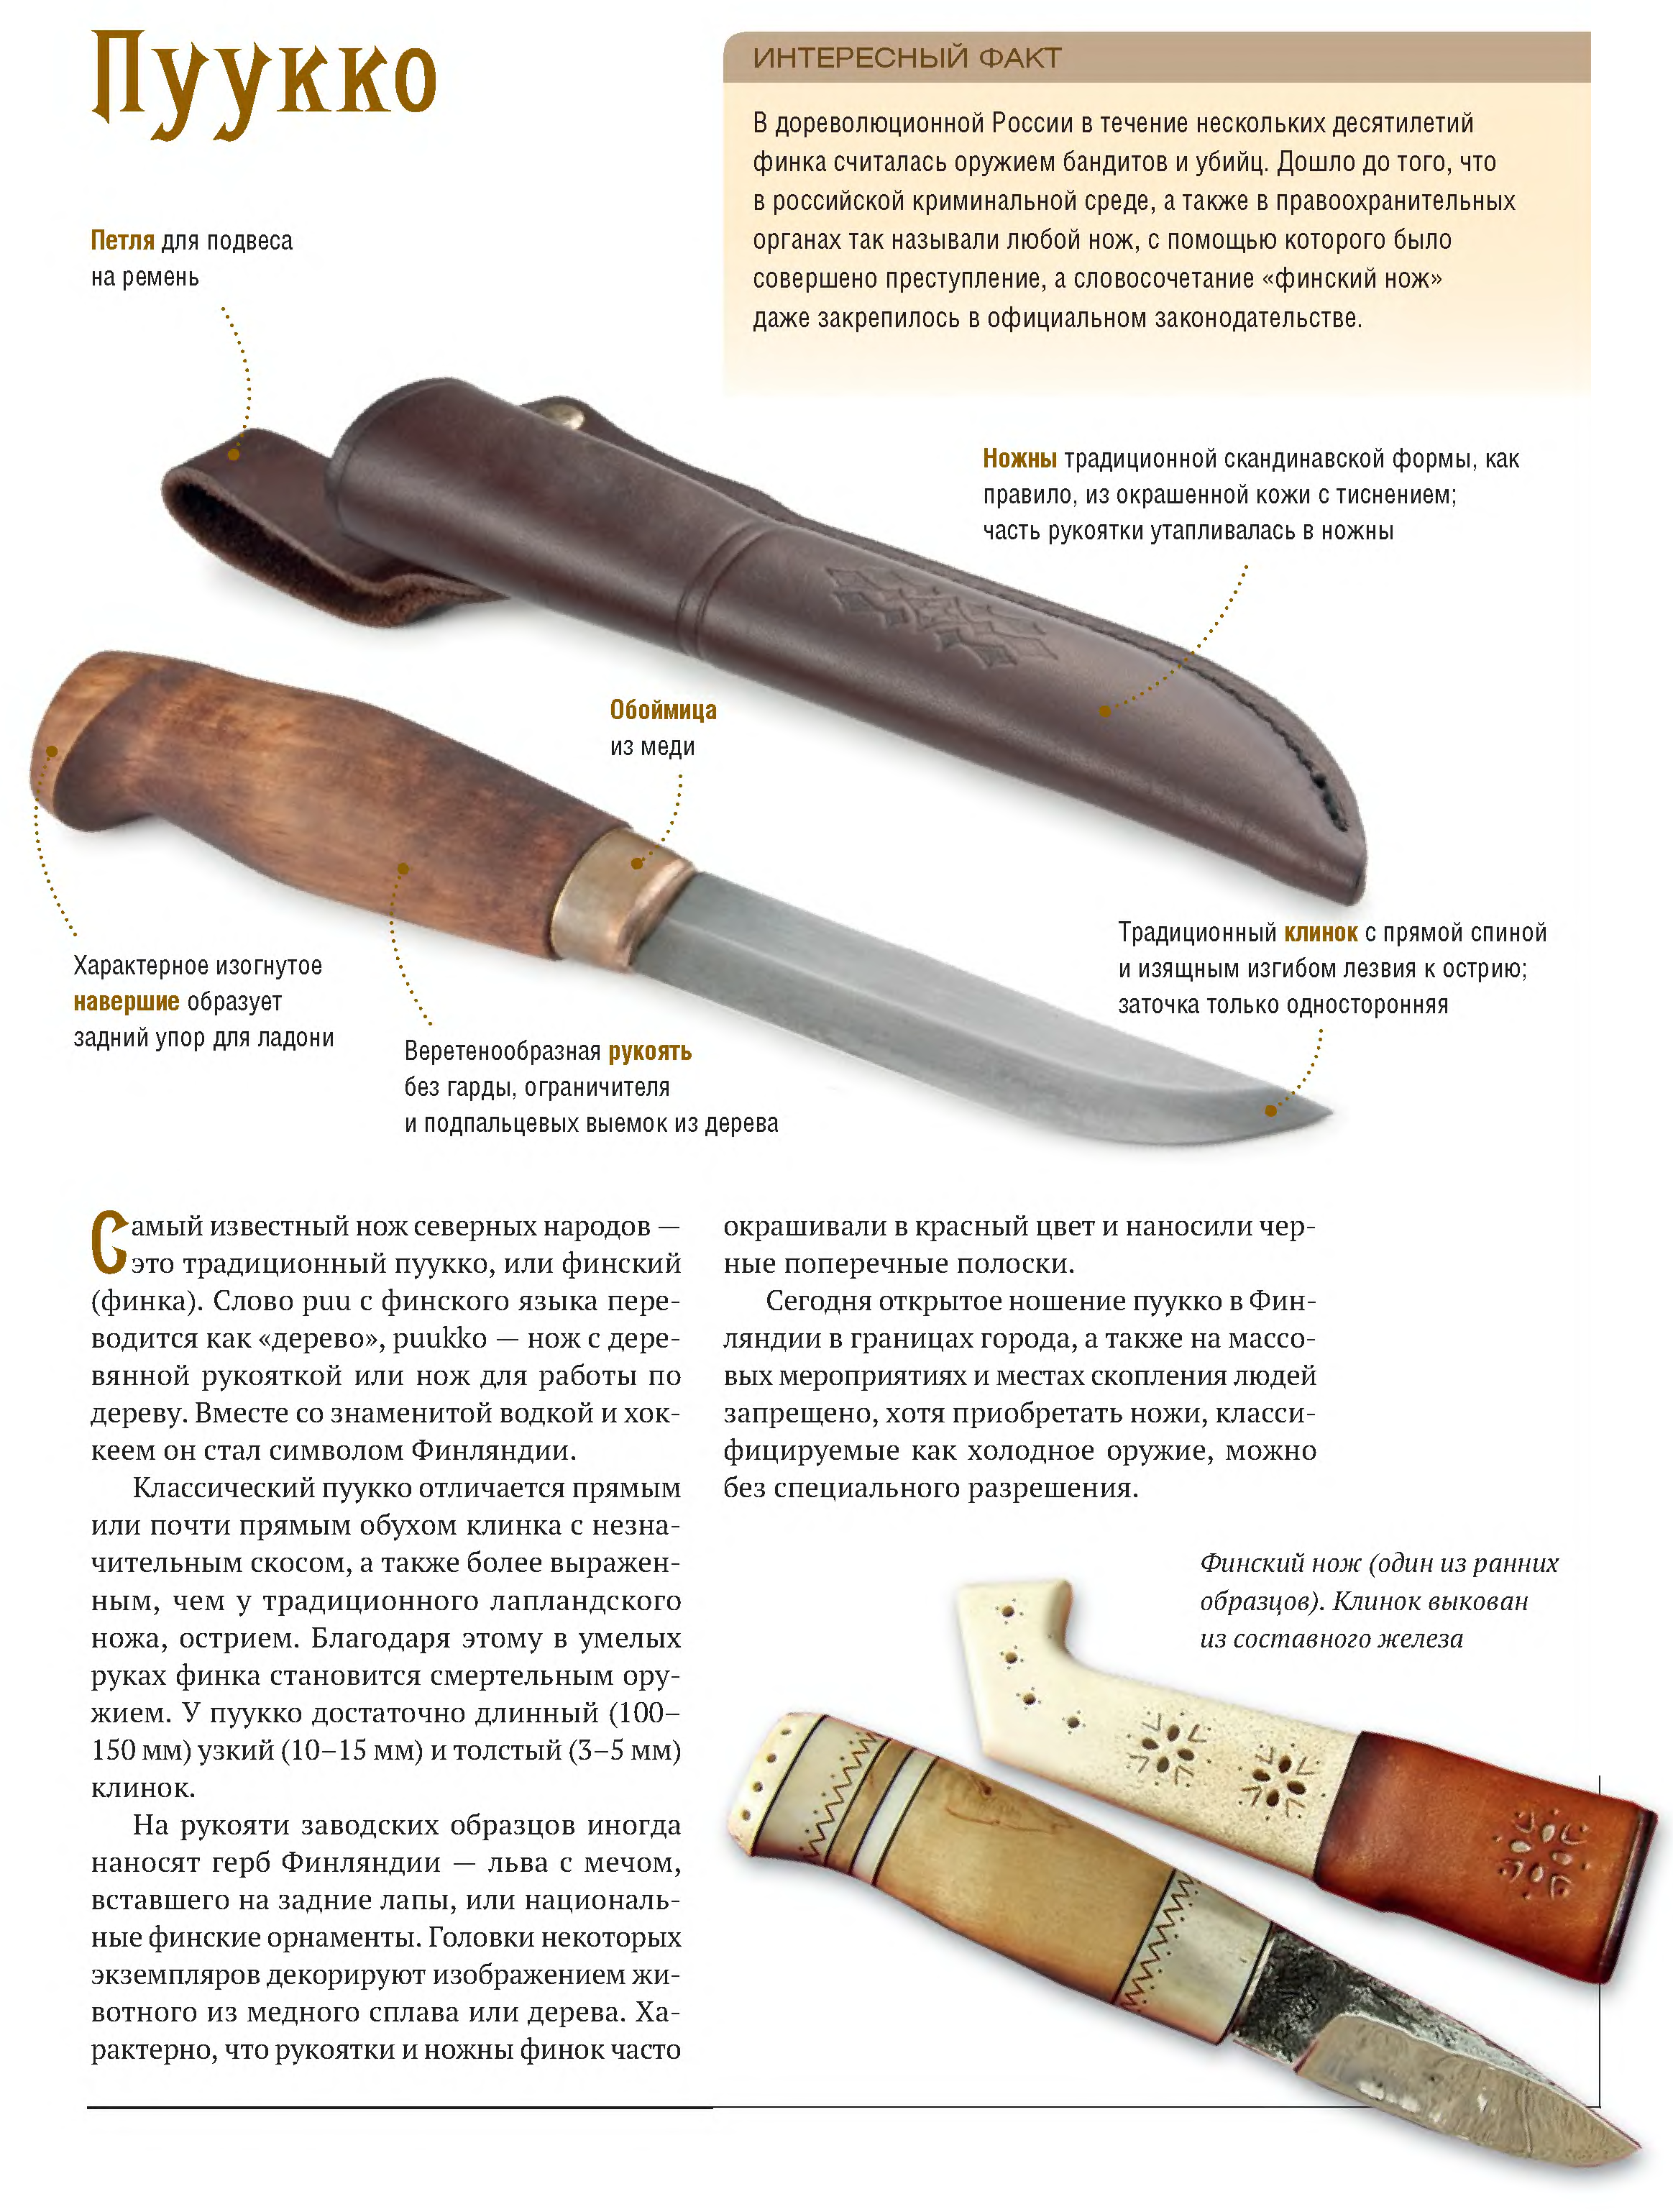 ✅ финский нож или пуукко. история, особенности, мнения - blackgun.su